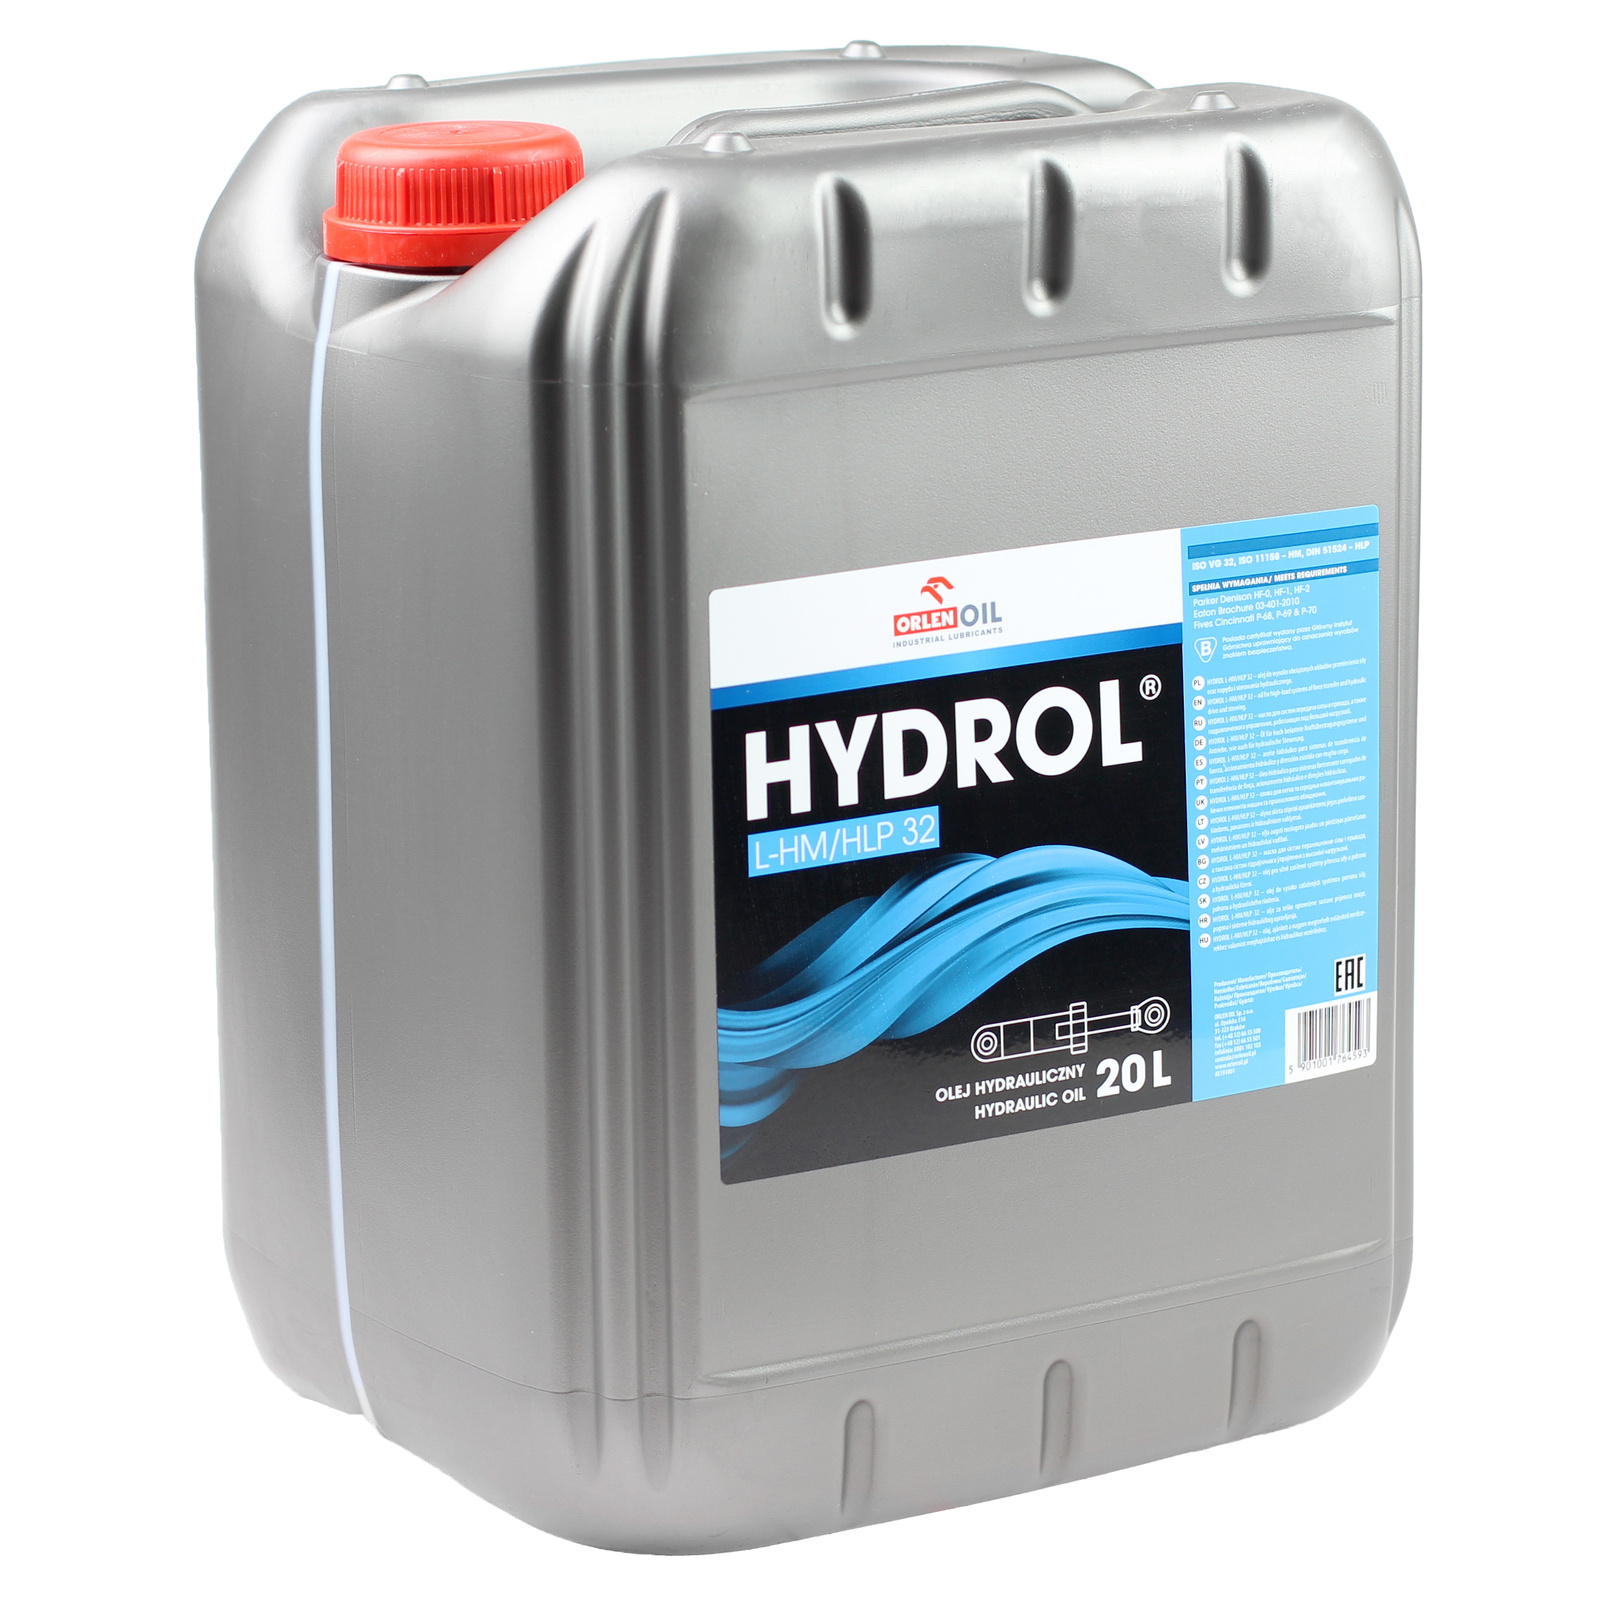 Гидравлическое масло Orlen HYDROL L-HM/HLP 32 20 л.